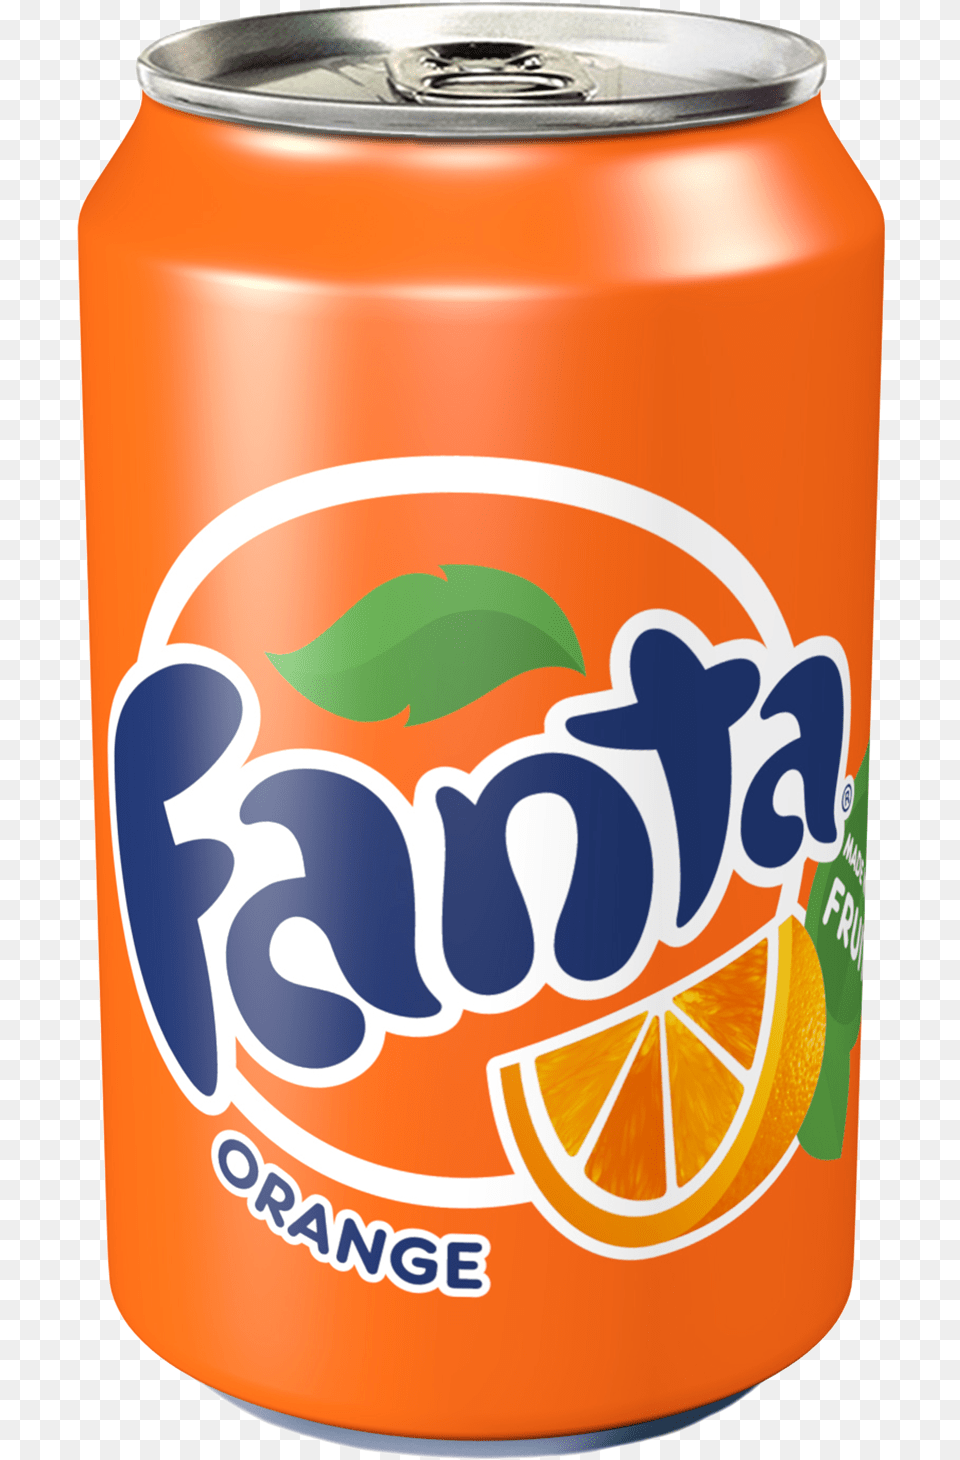 Fanta Orange Drink Warehouse Uk, Tin, Can Free Transparent Png